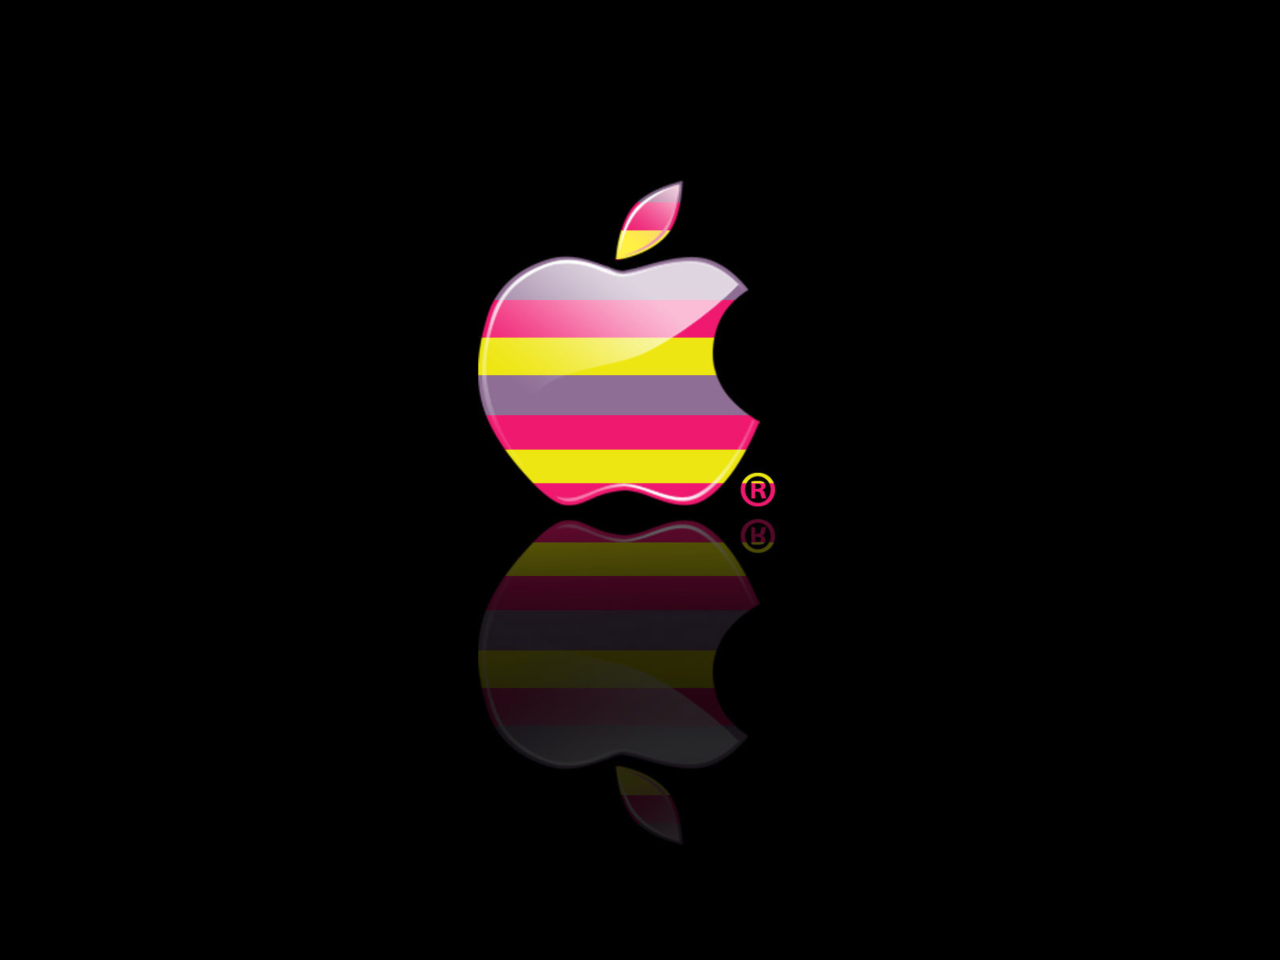 Das Colorful Stripes Apple Logo Wallpaper 1280x960